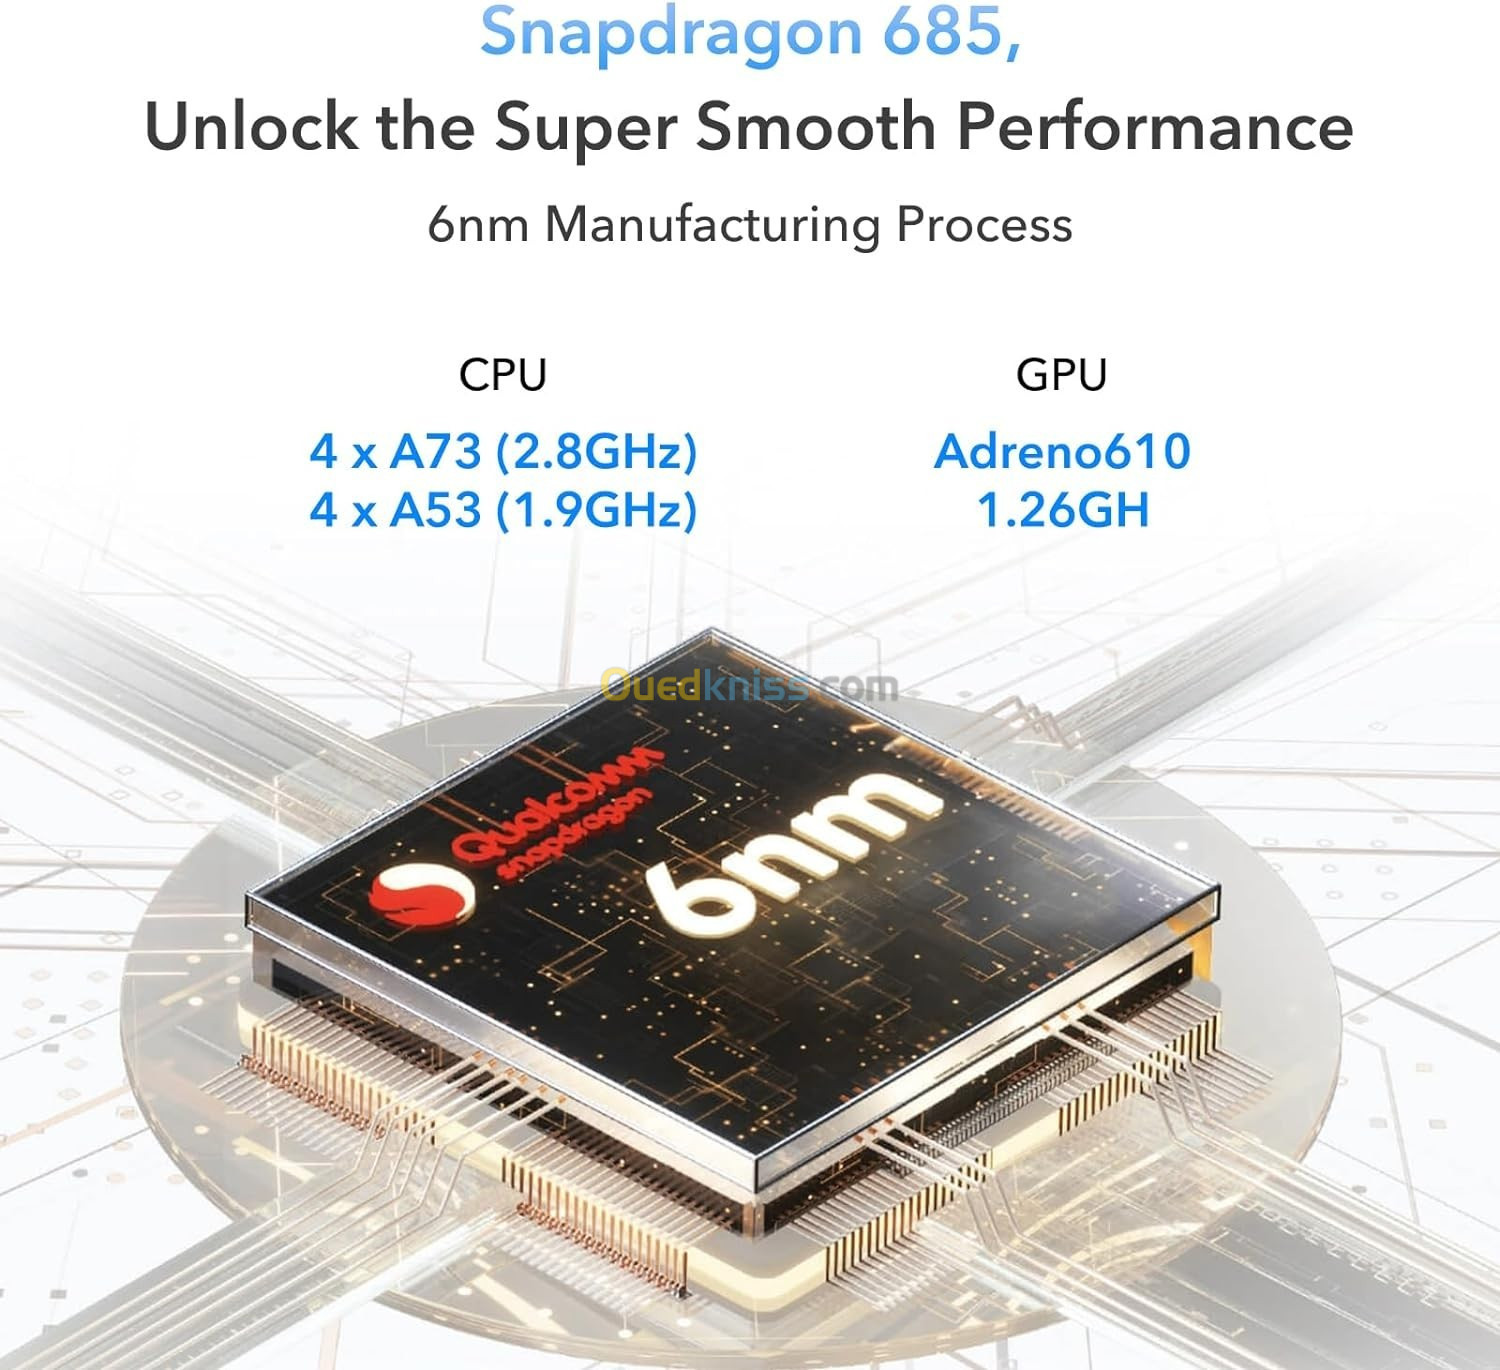 Honor Pad X9 11.5 pouces  2K 120Hz - 4GB RAM - 128GB Stockage - 4G - WIFi